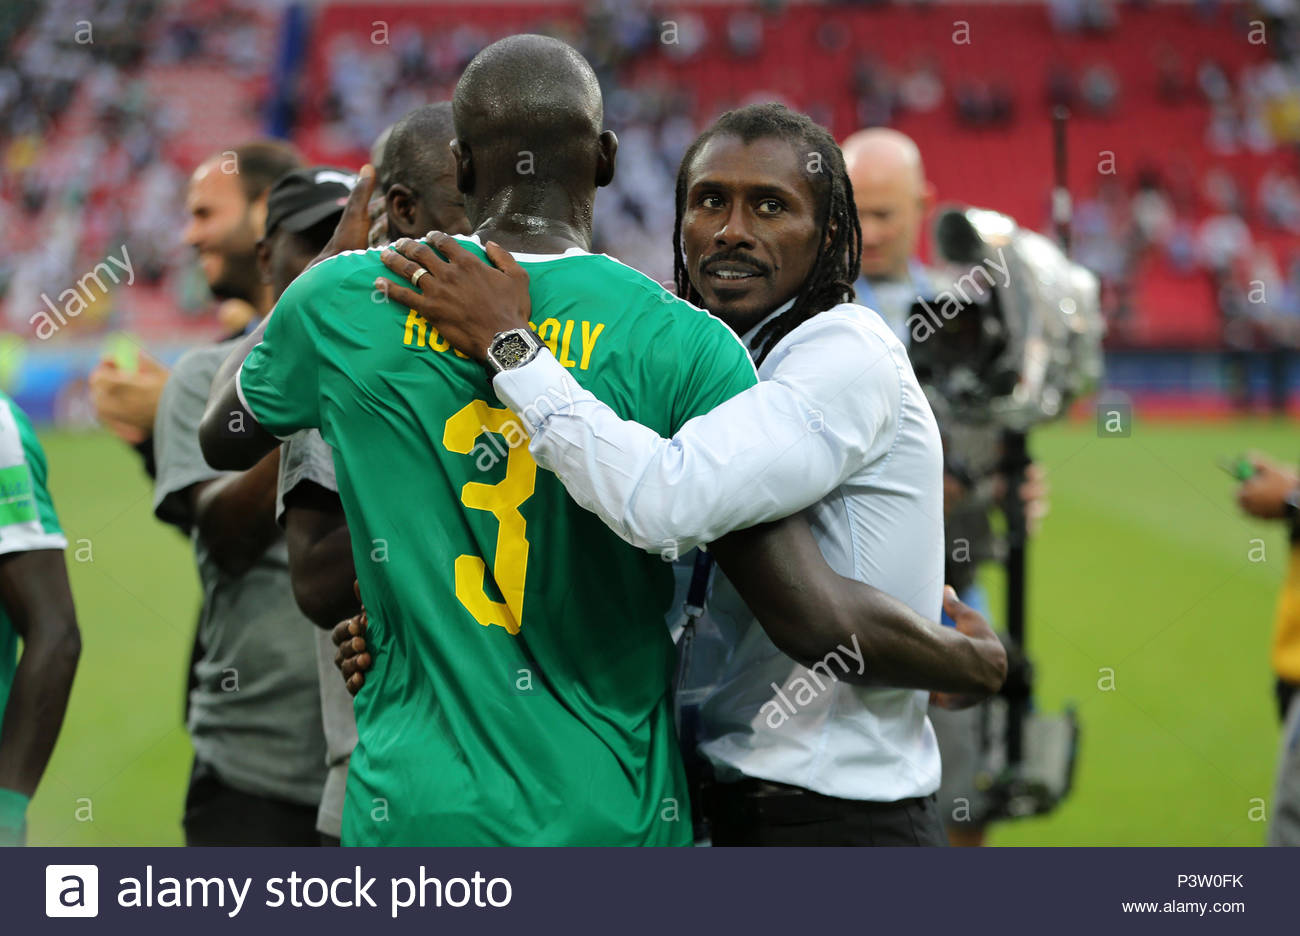 Aliou Cissé : « Kalidou Koulibaly est le meilleur défenseur du monde »